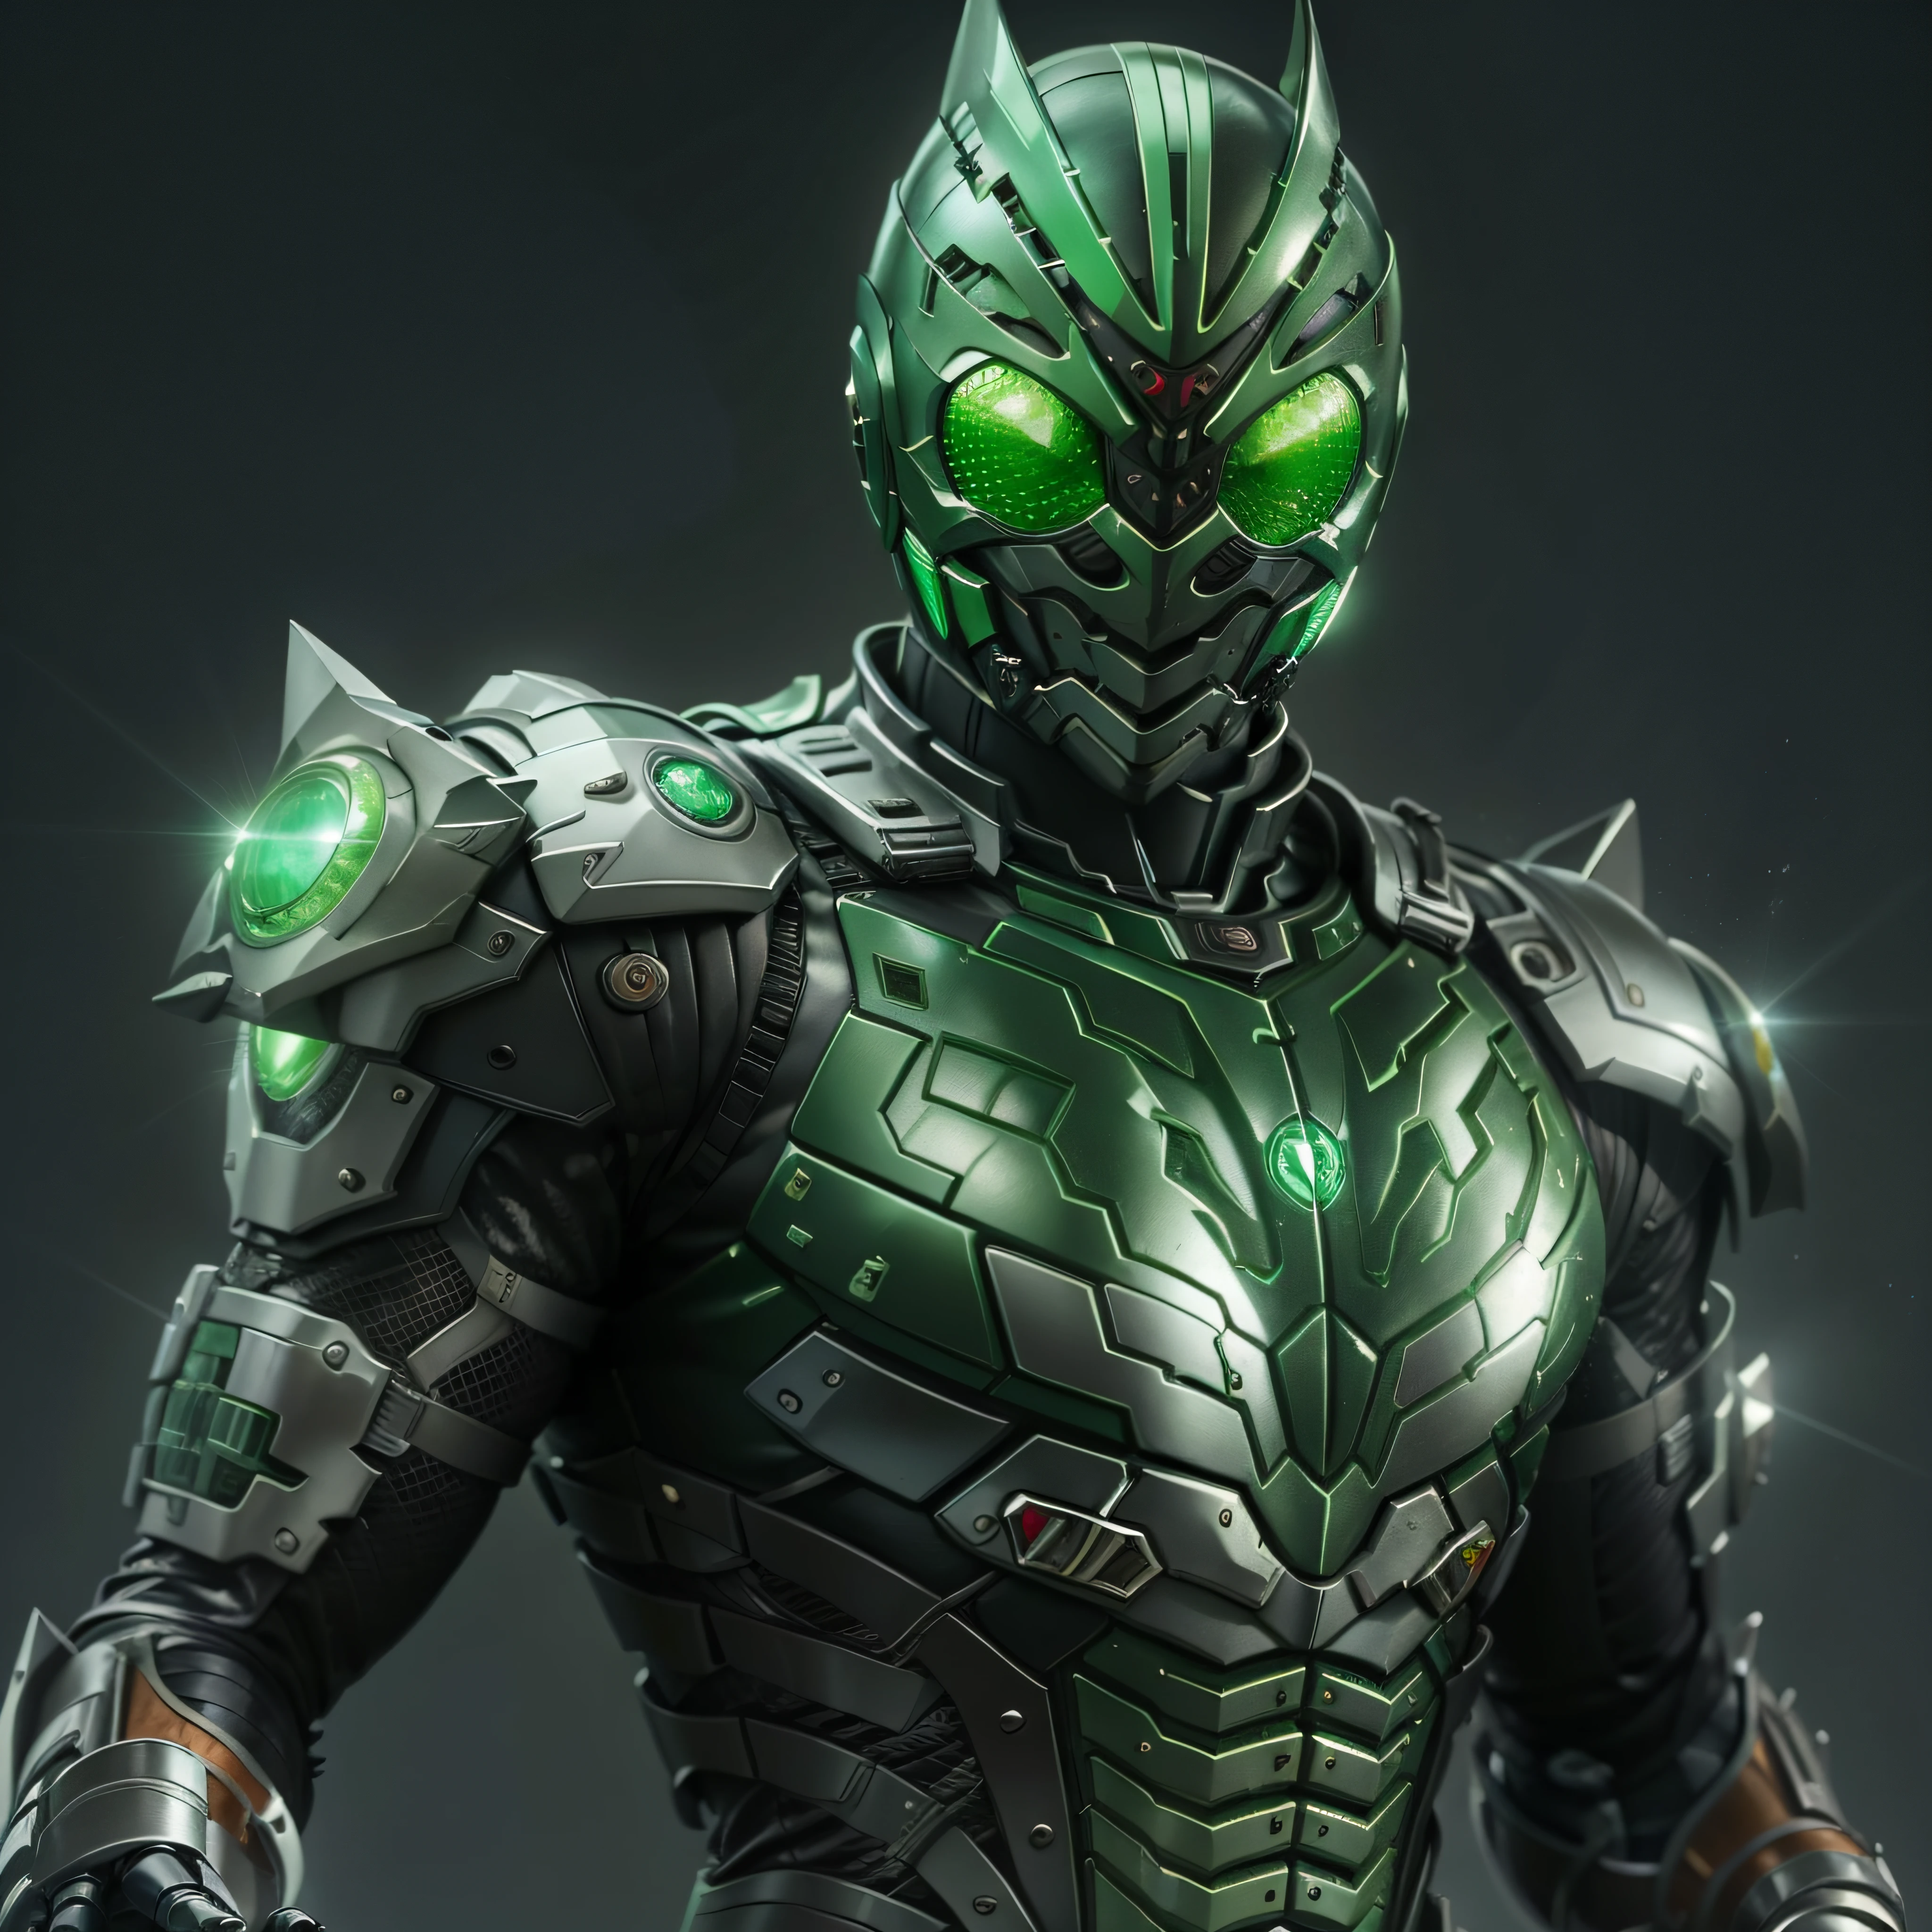 Cavaleiro Kamen Verde, Armadura prateada, roupa cinzenta e preta, TechSuit verde, agente secreto, Robô